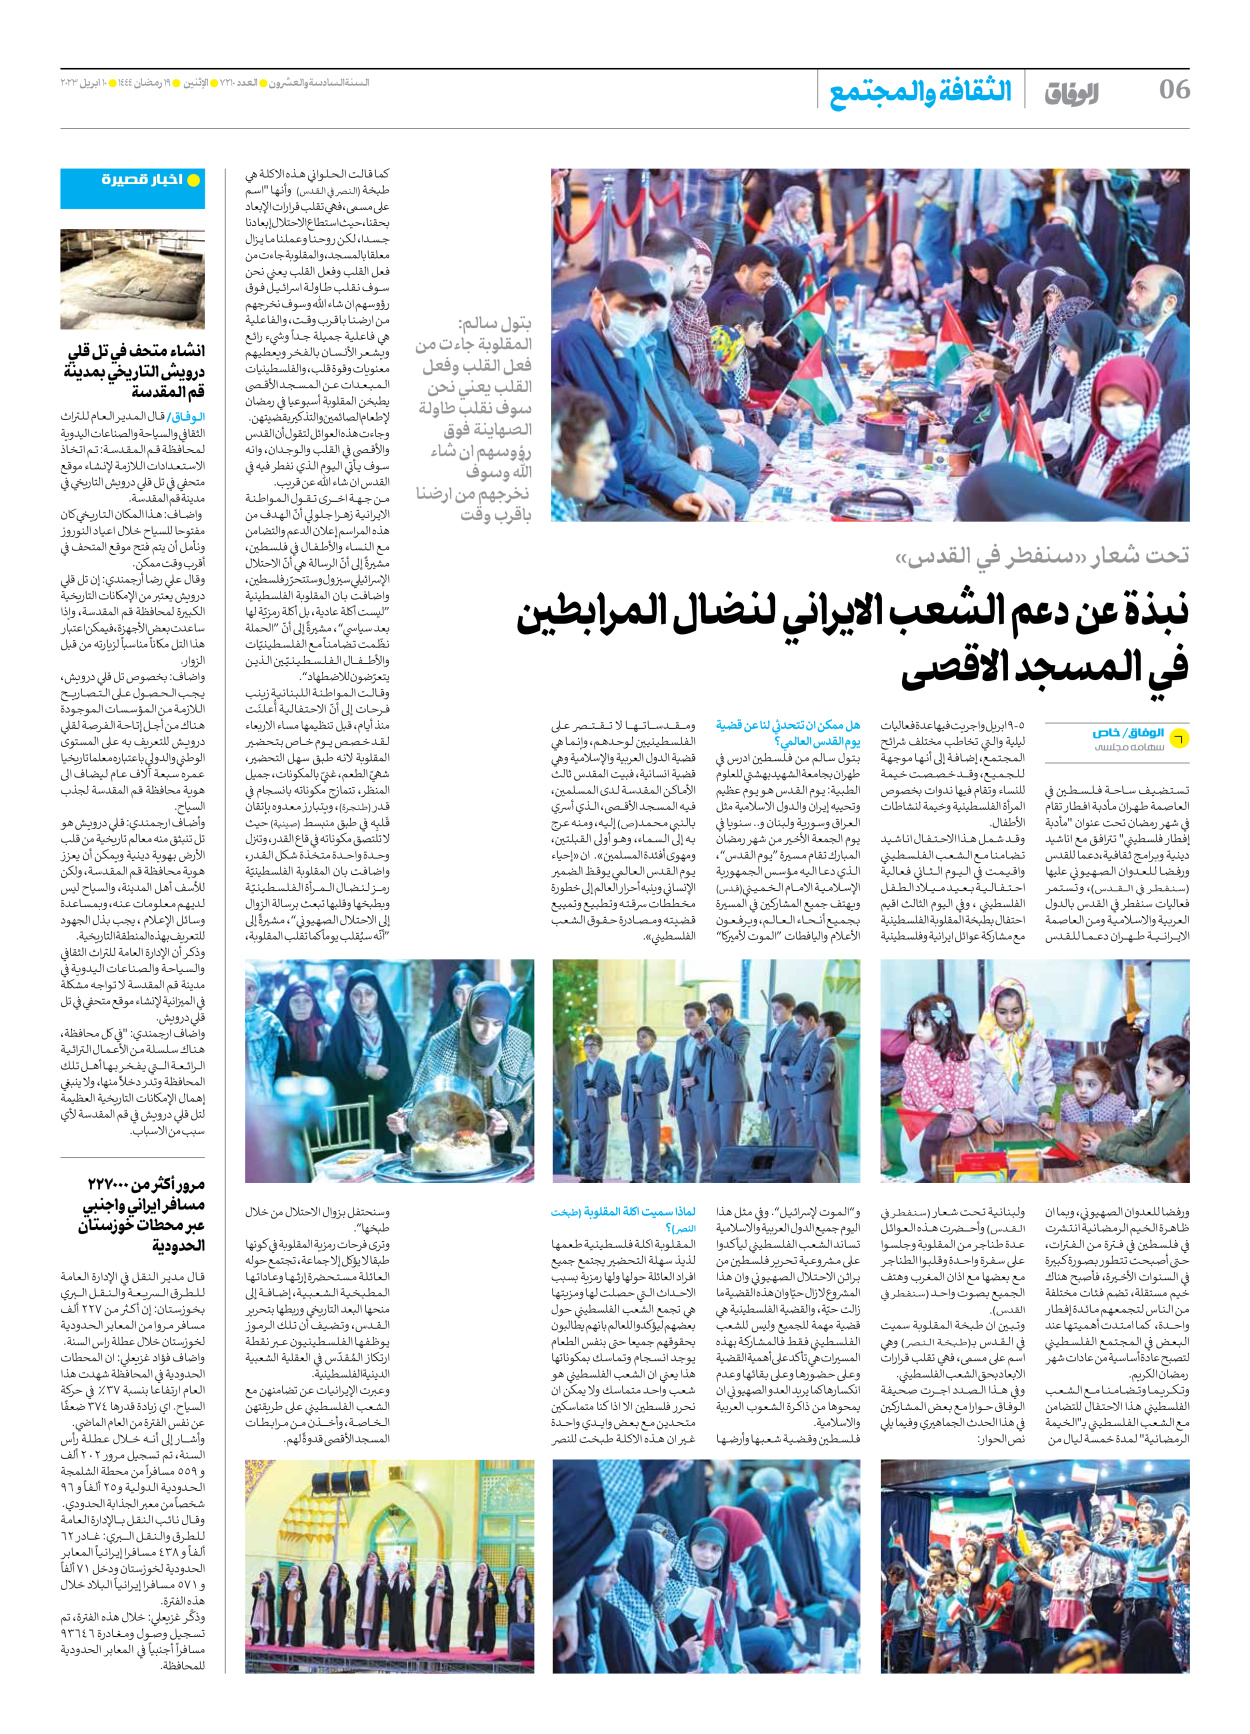 صحیفة ایران الدولیة الوفاق - العدد سبعة آلاف ومائتان وعشرة - ١٠ أبريل ٢٠٢٣ - الصفحة ٦